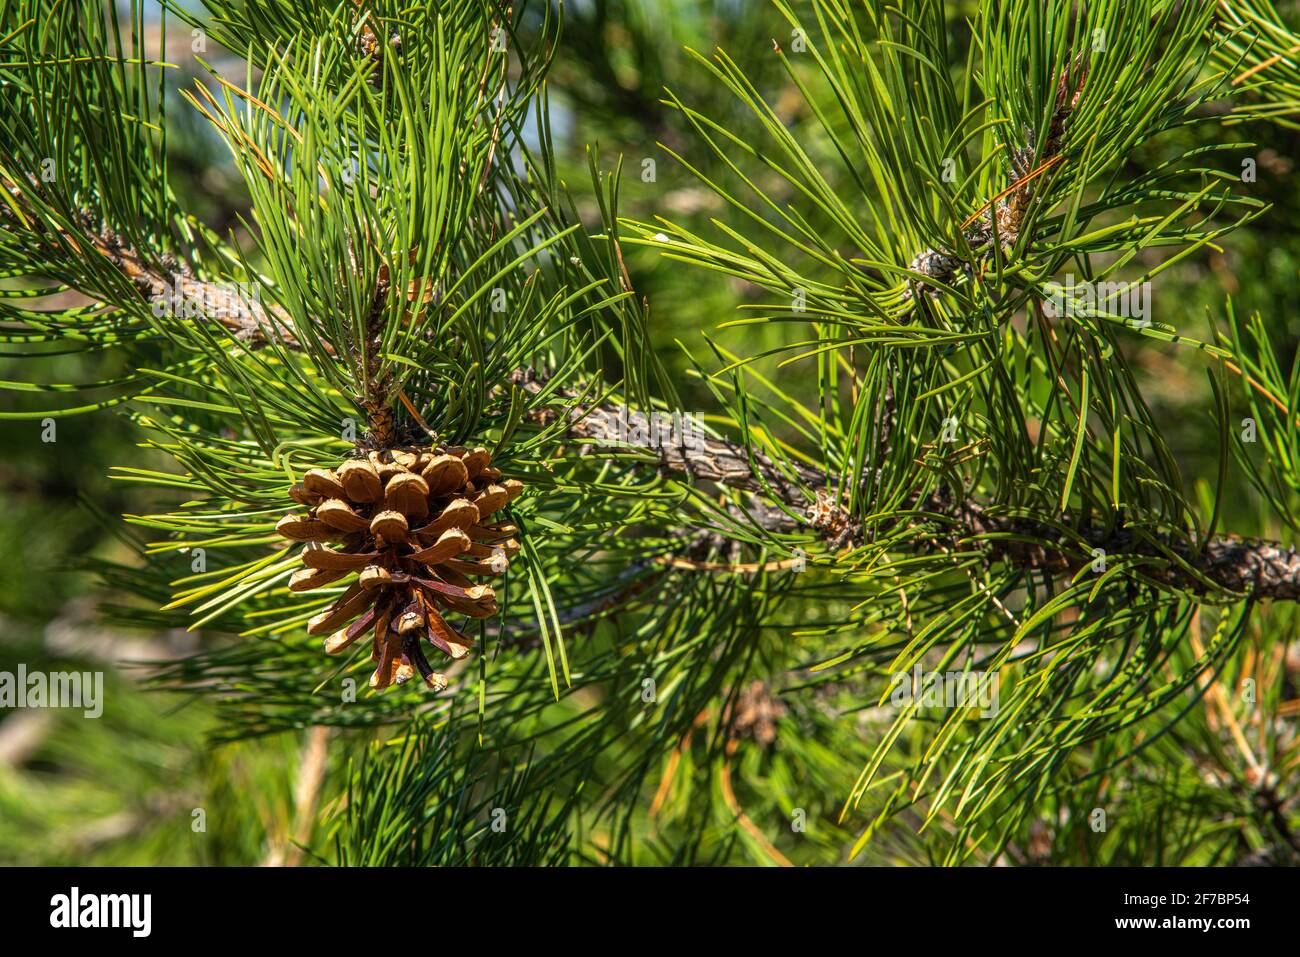 Detail einer Schwarzkiefer, Pinus nigra, Zweig mit dem klassischen Kiefernkegel und Nadeln. Abruzzen, Italien, Europa Stockfoto